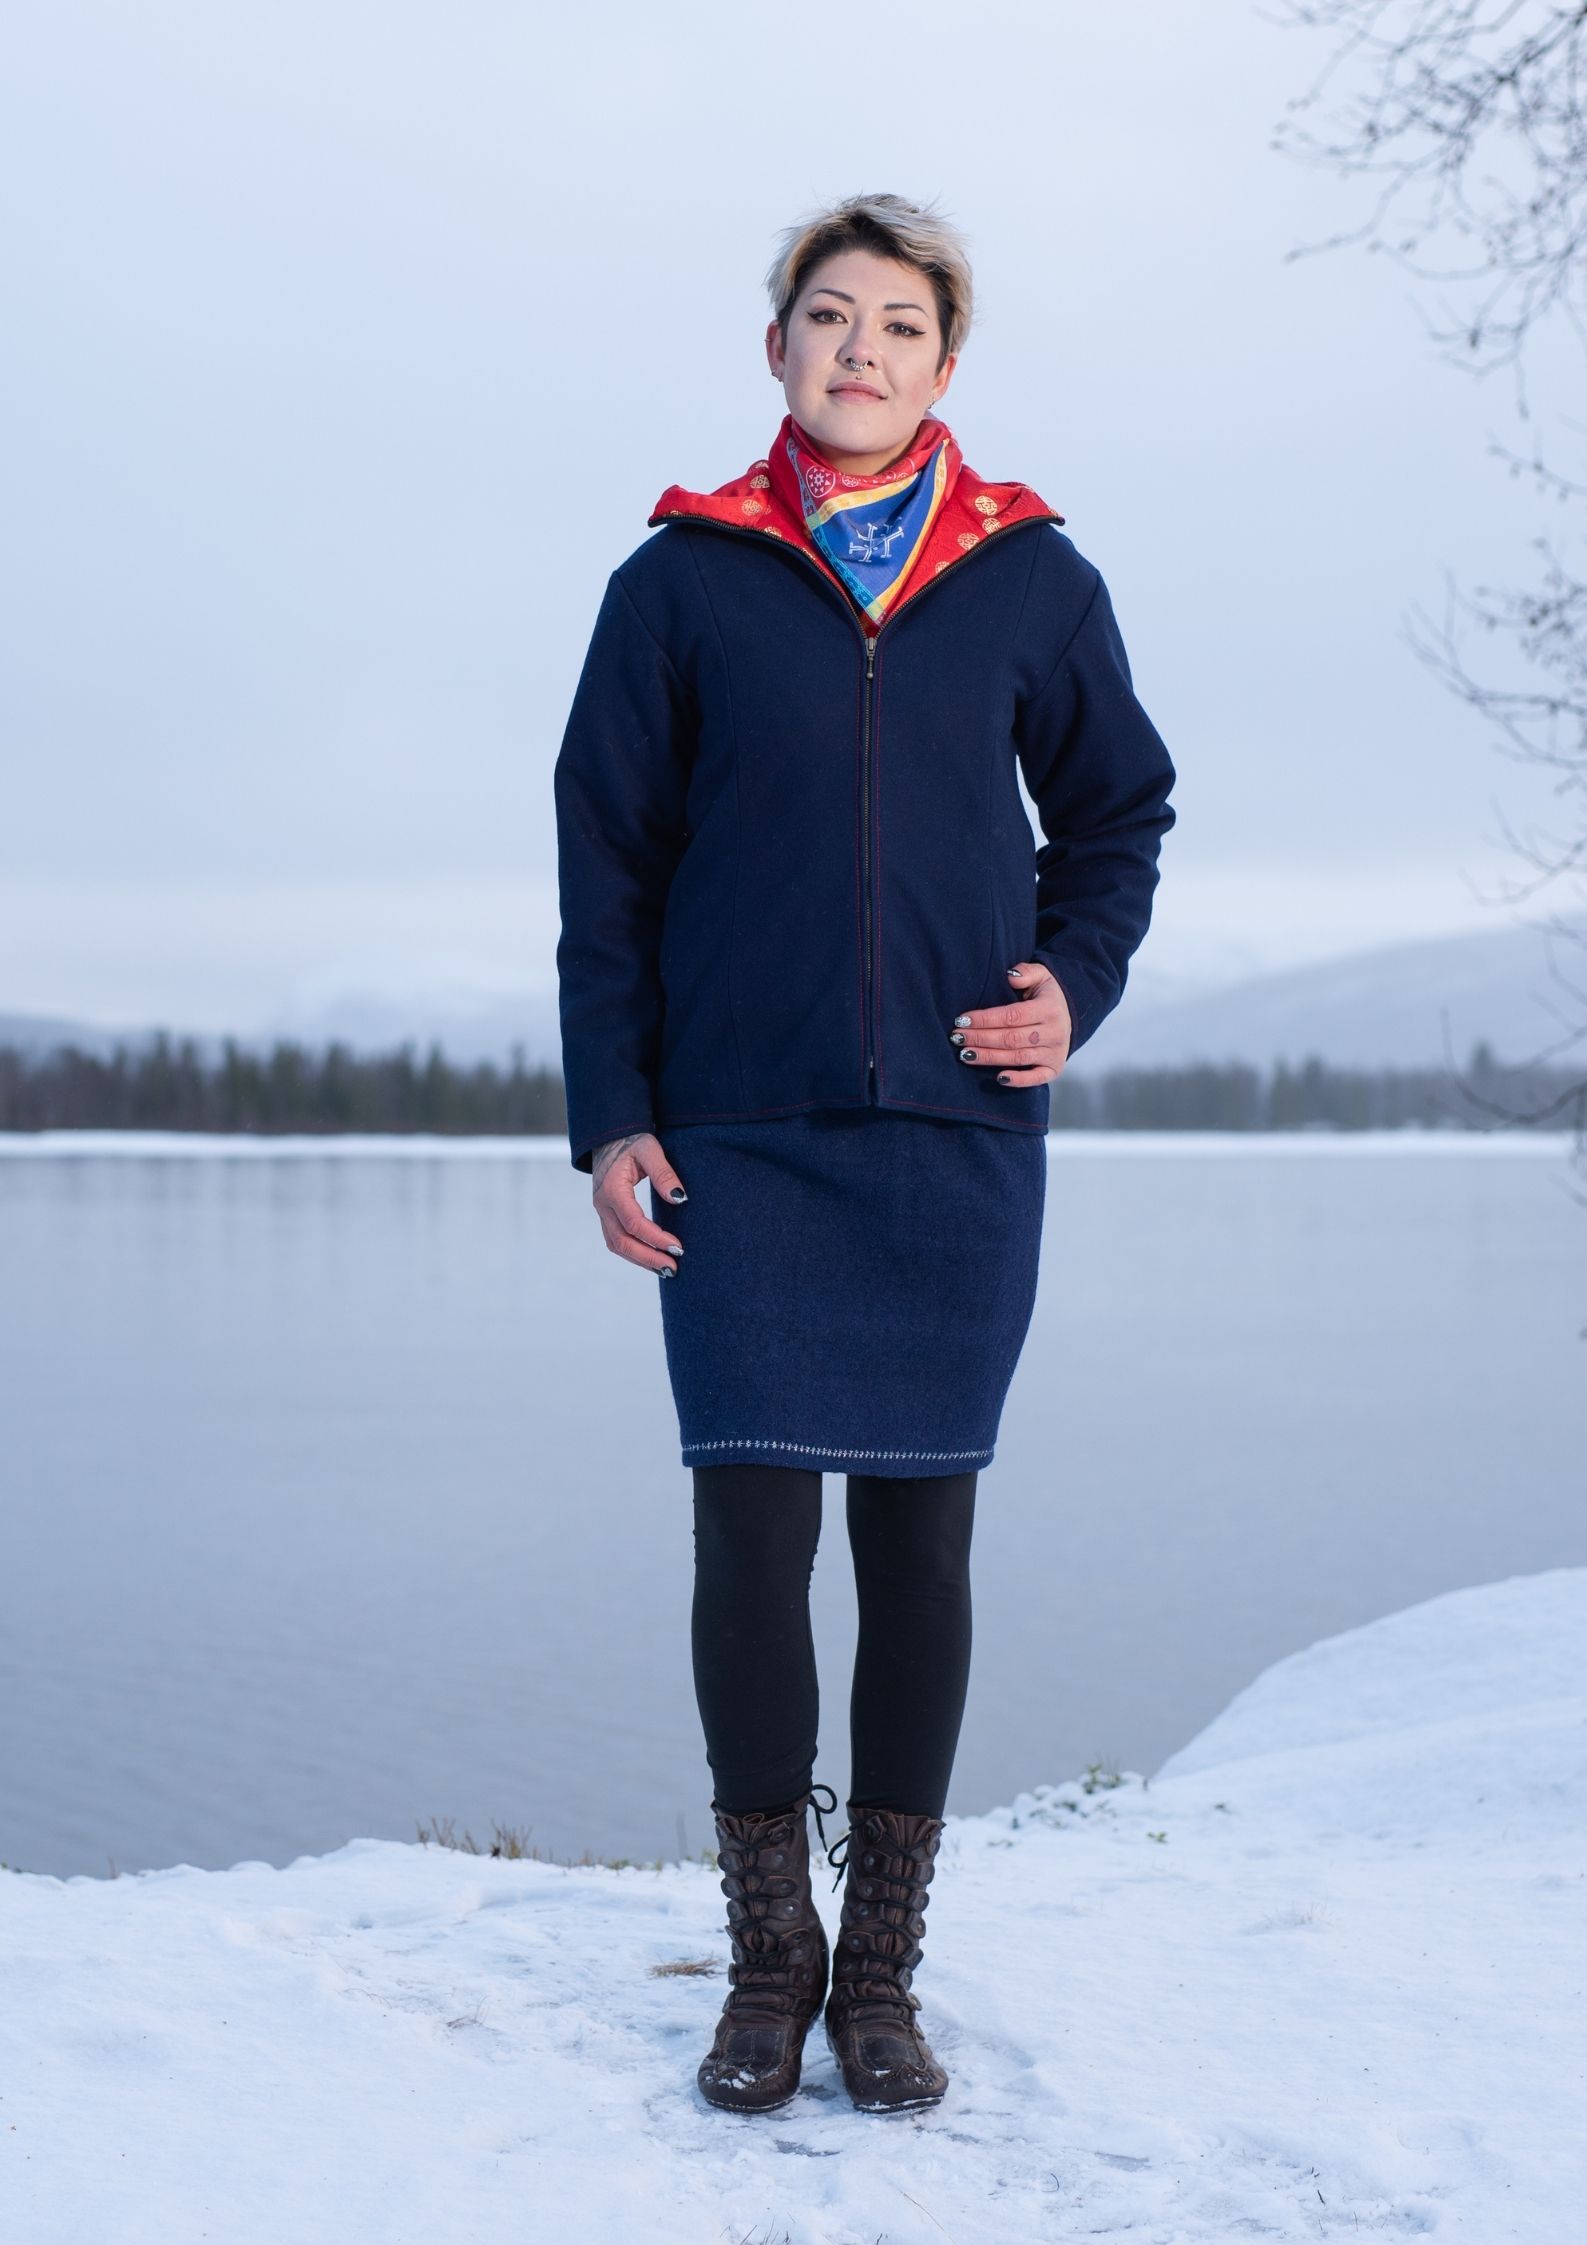 Sara Svonni design Tärnaby renskinn kläder ull fjäll sameslöjd